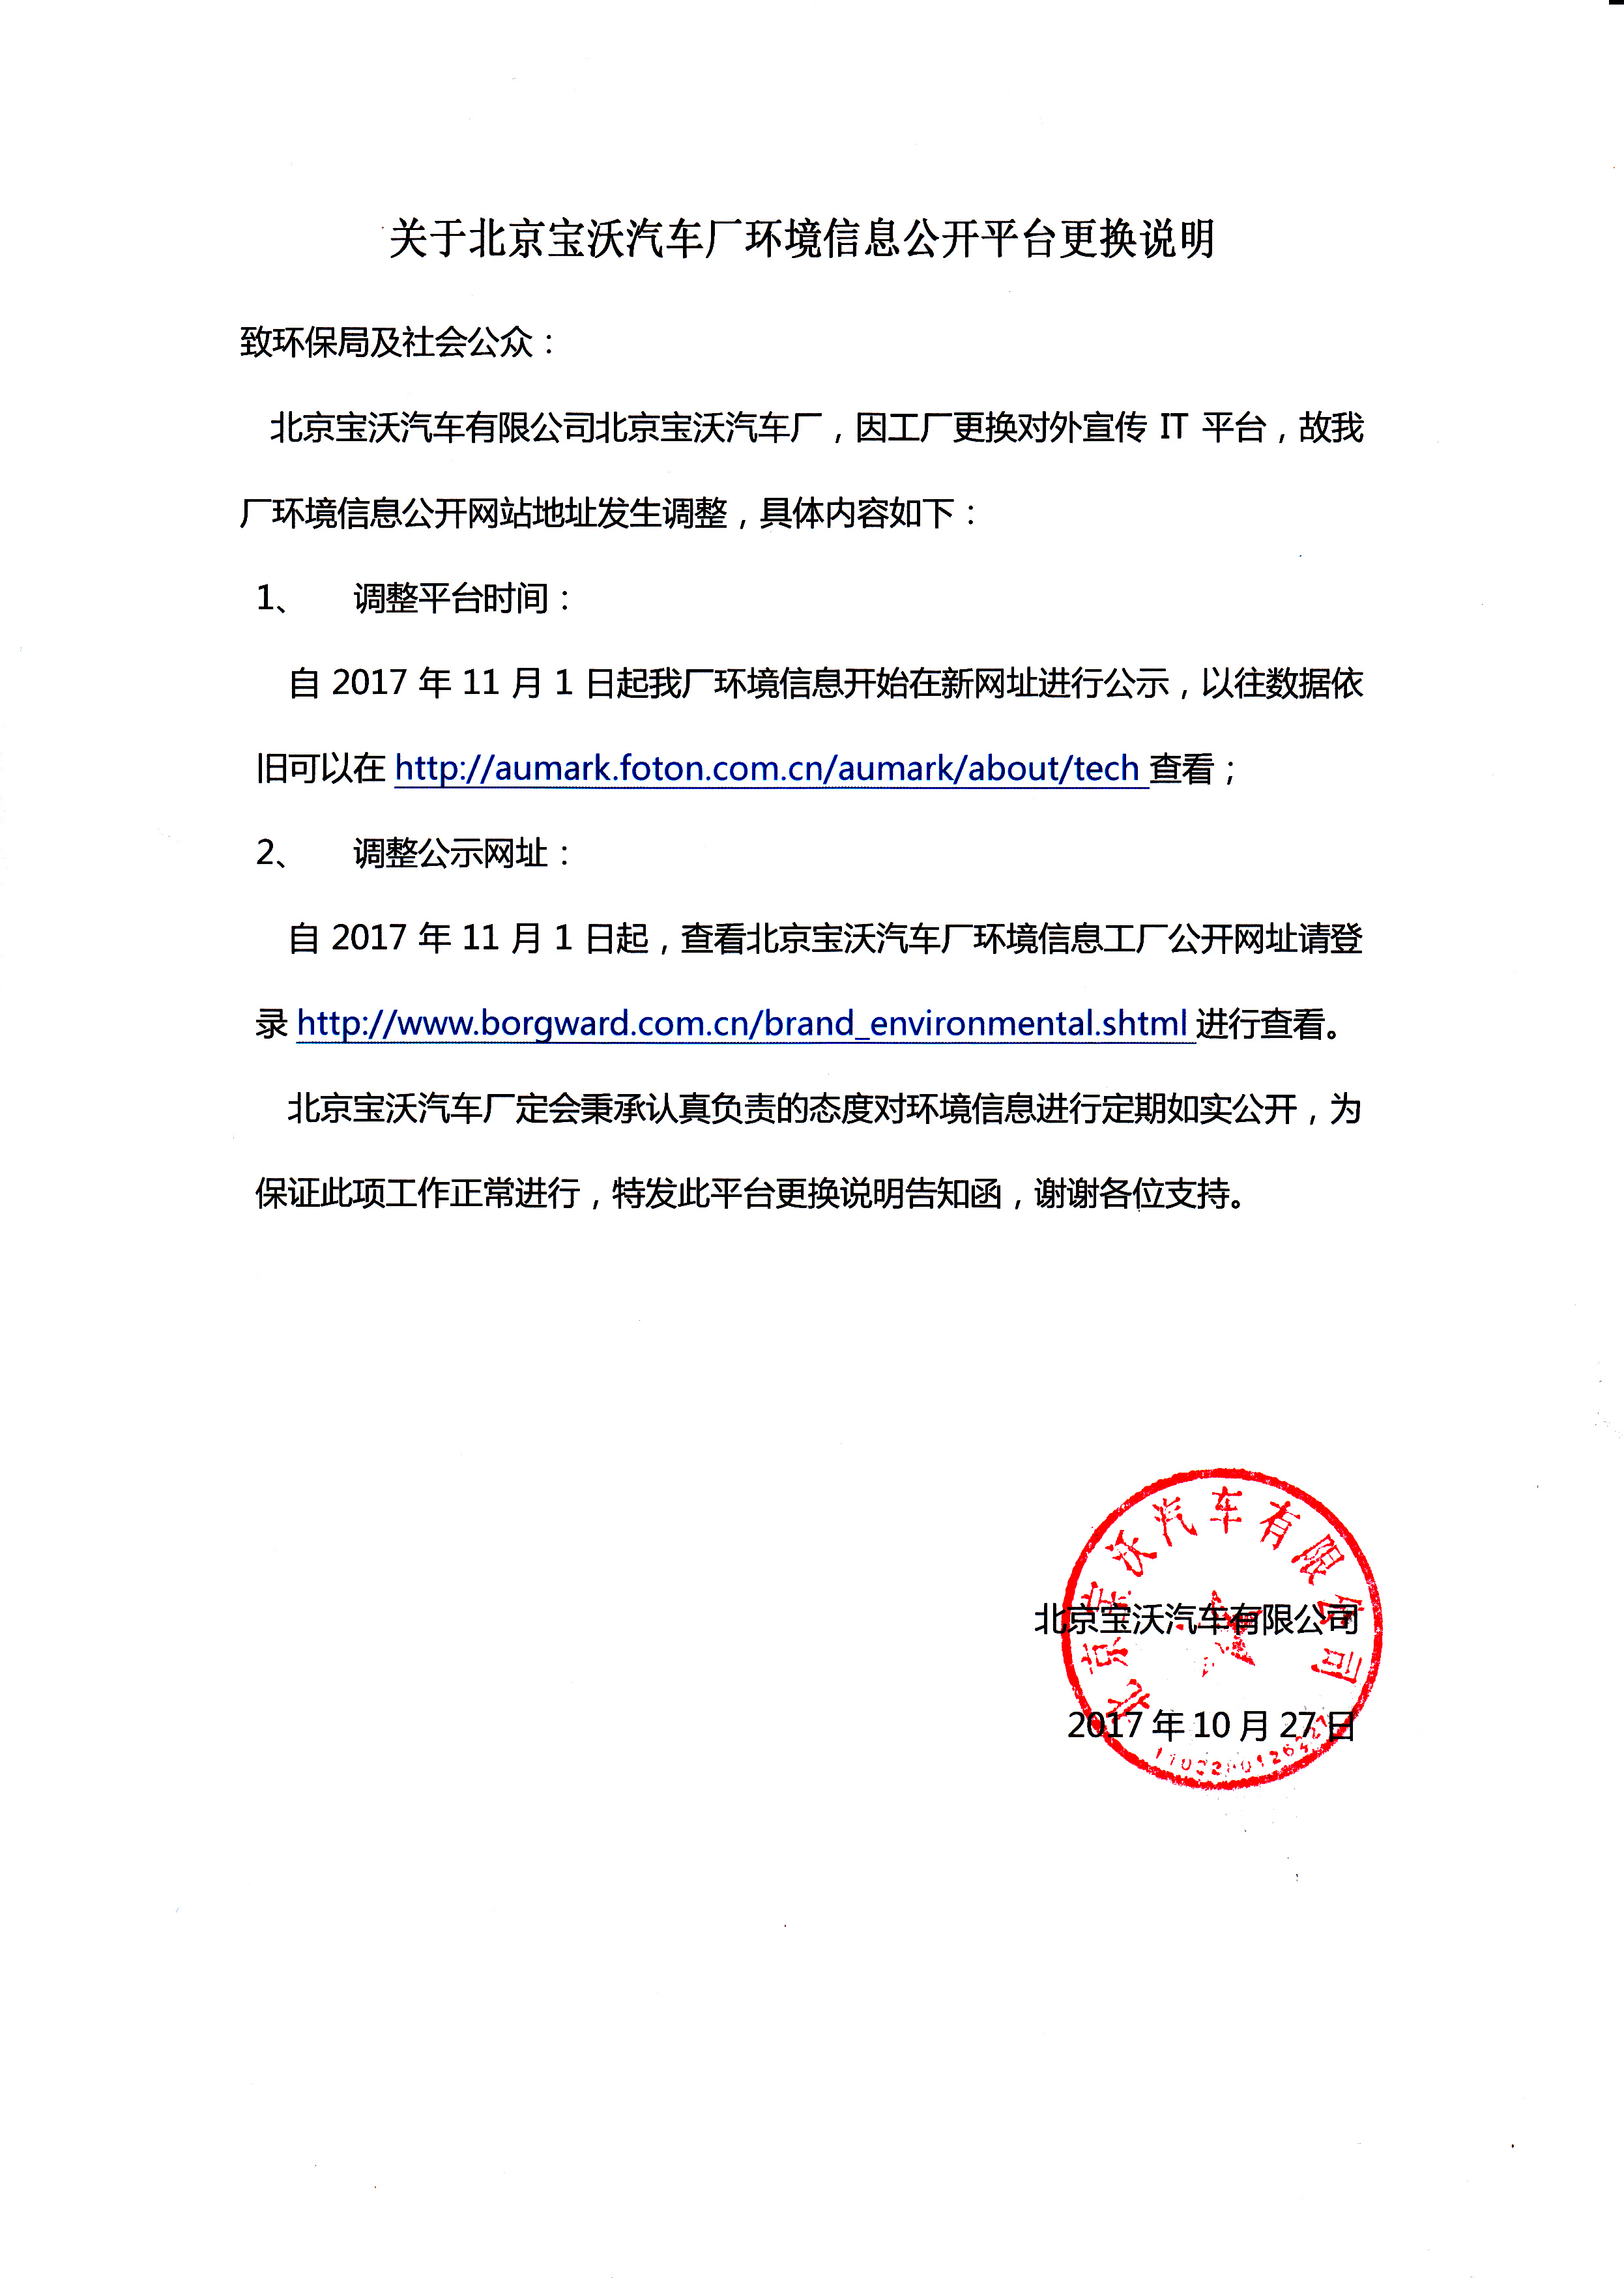 关于北京宝沃汽车厂环境信息公开平台更换说明.jpg